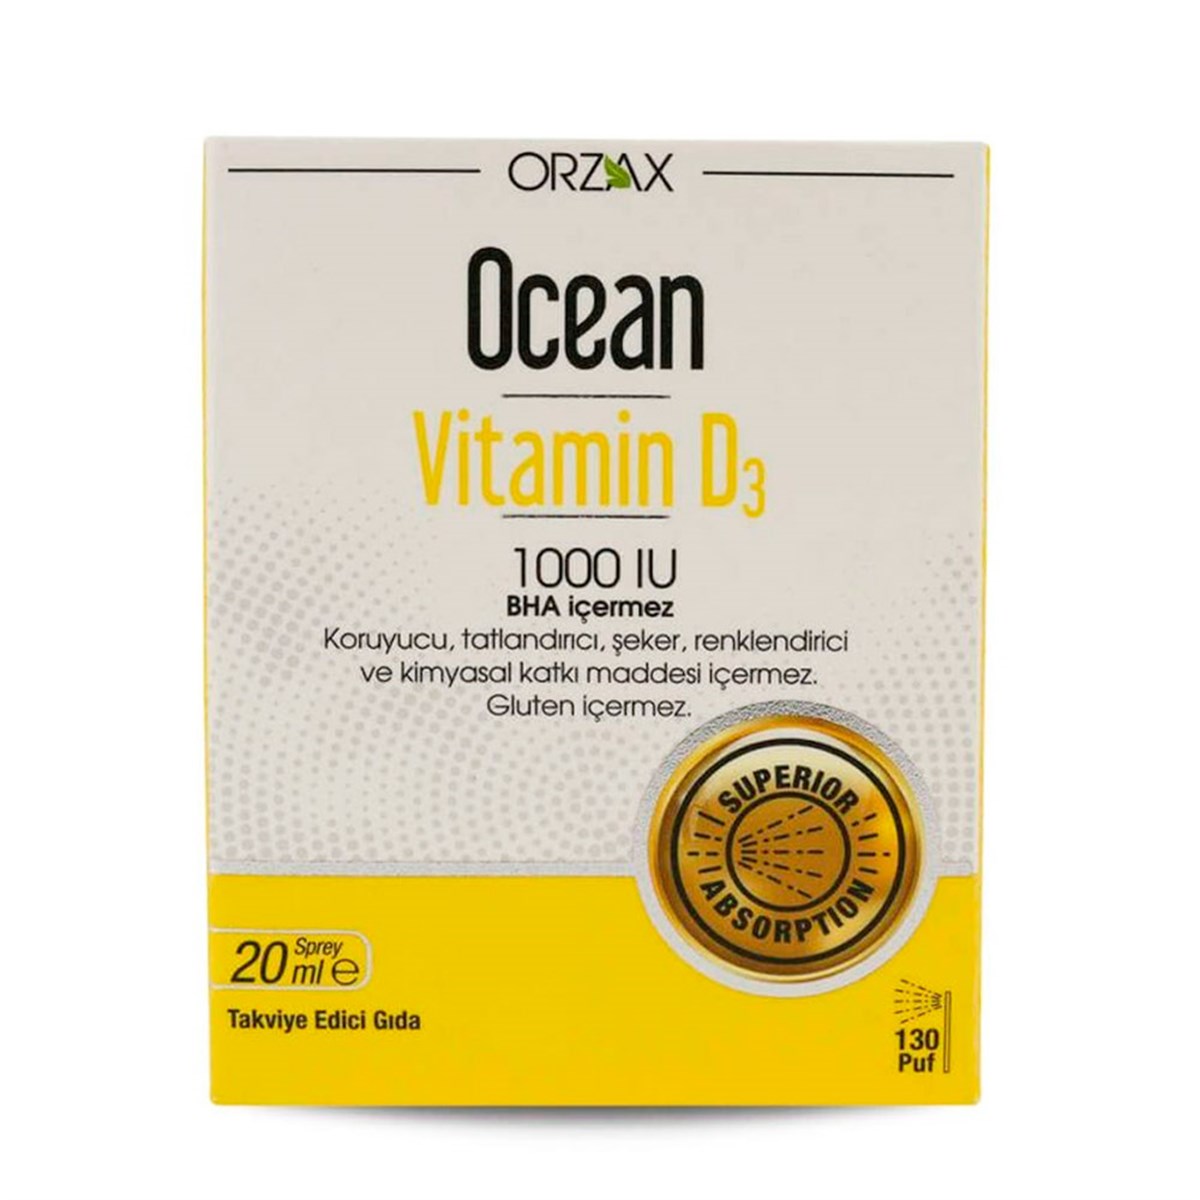 Ocean Vitamin D3 1000 IU 20ml Sprey Fiyatı 49,50 TL Vitamin Dolabı